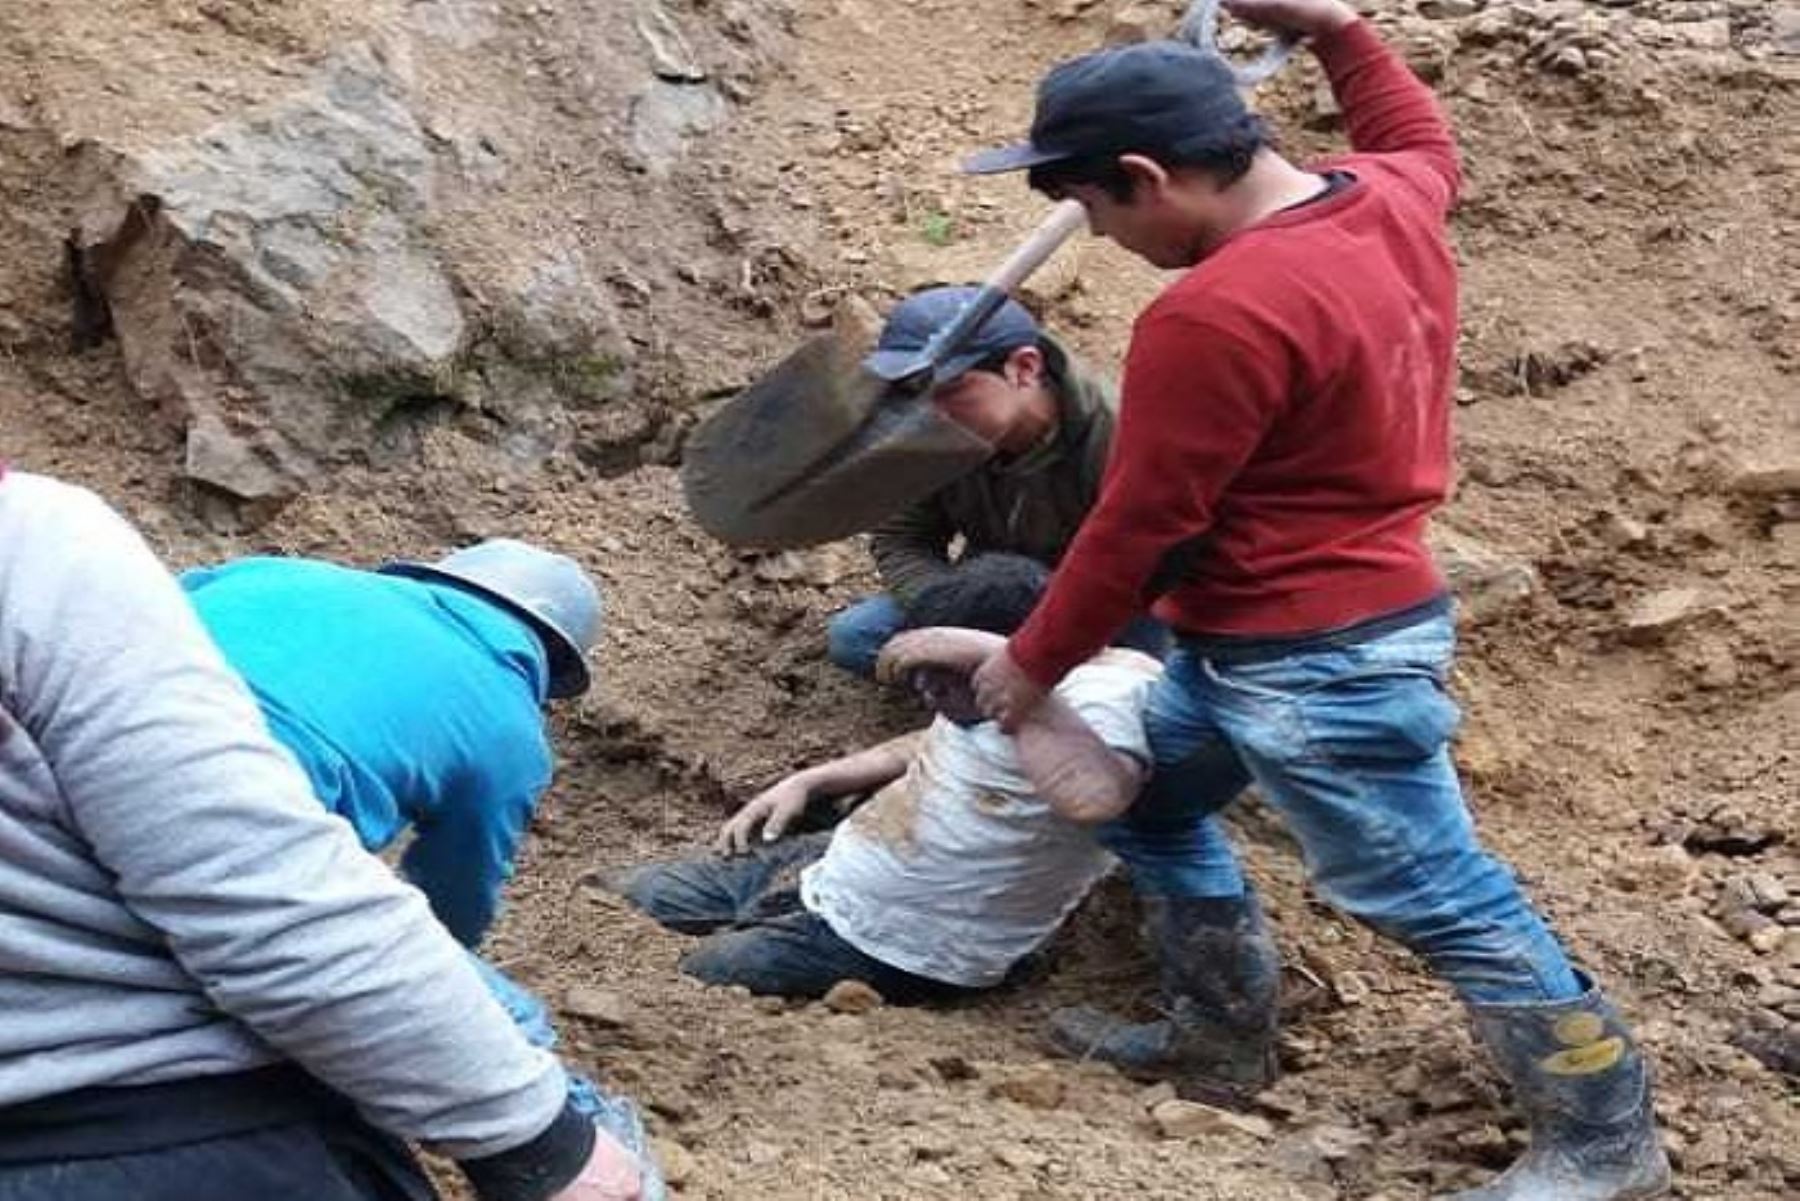 El derrumbe de una mina informal ocasionó la muerte de una persona, mientras que otras tres quedaron gravemente heridas, en el distrito de Parcoy, provincia de Pataz, región La Libertad.